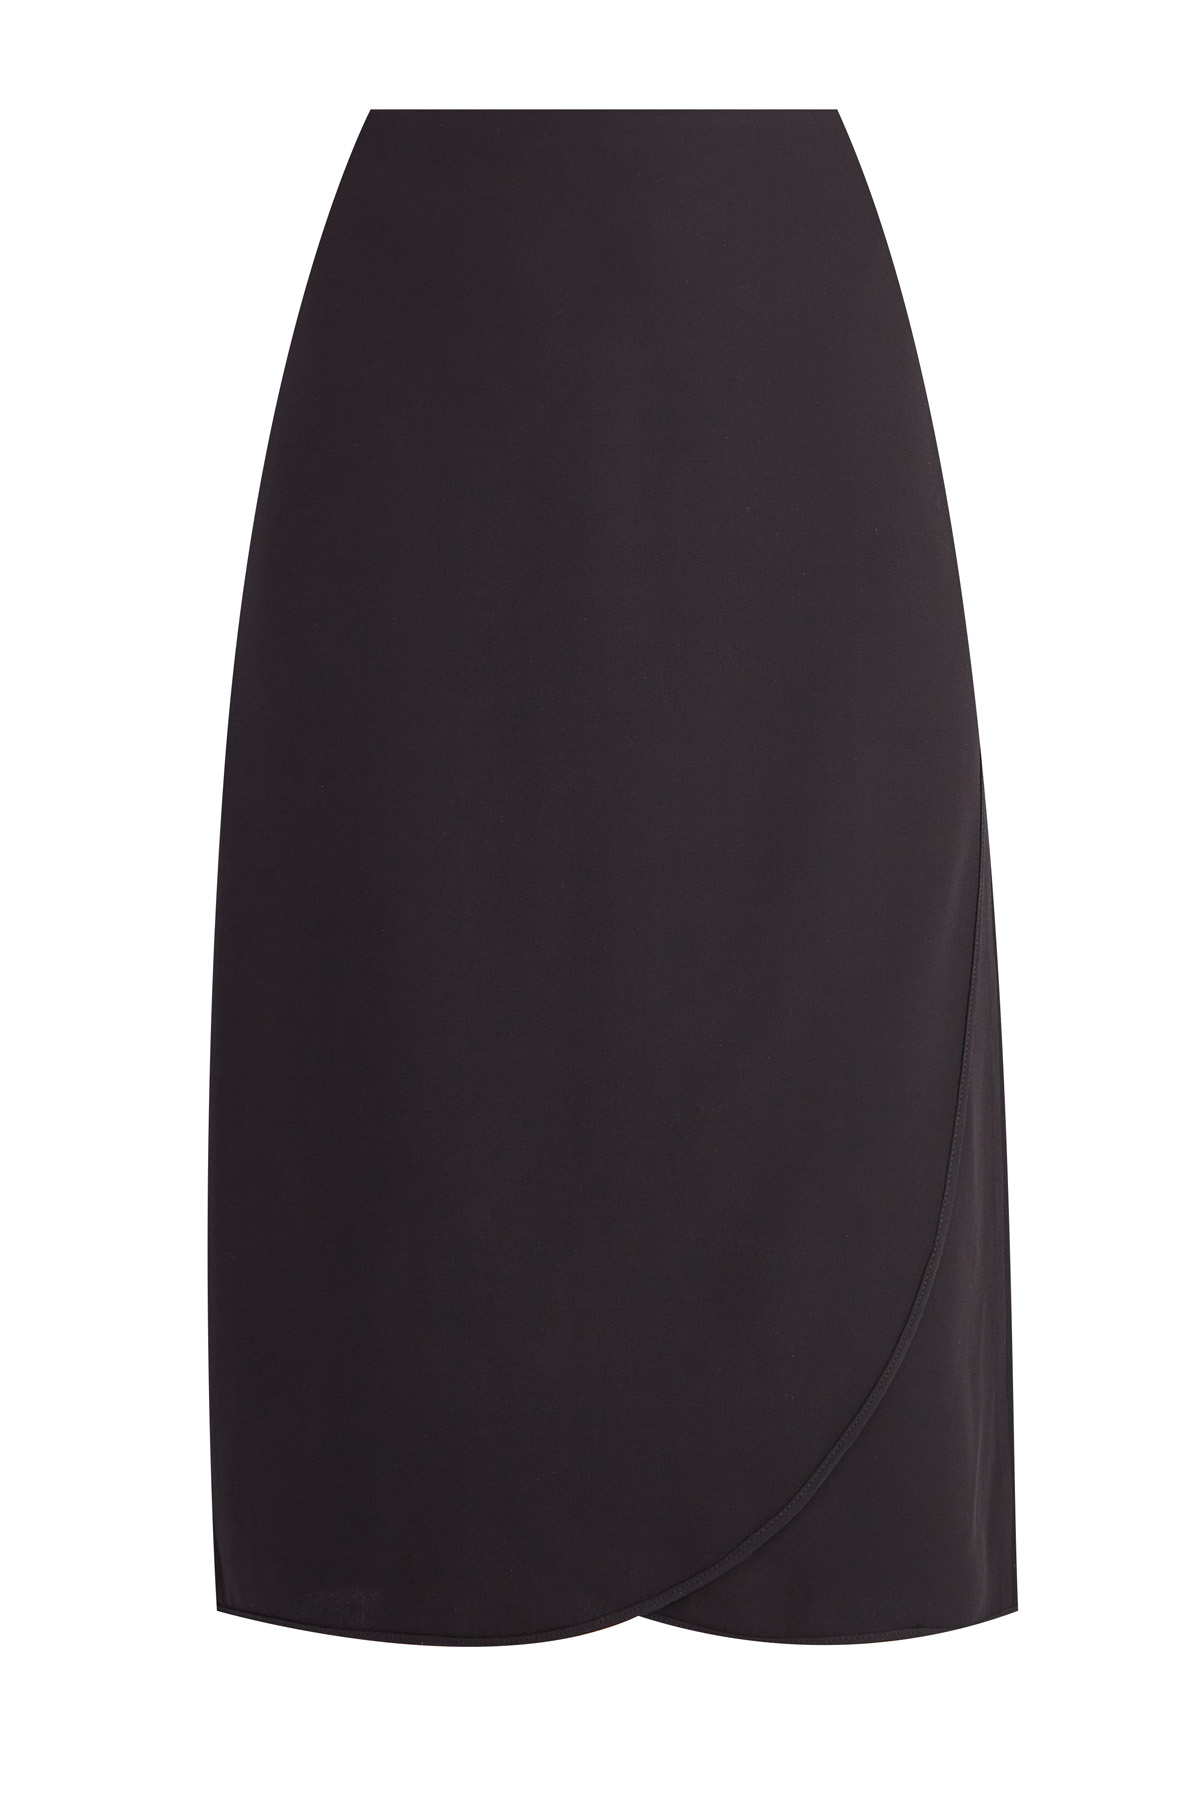 Минималистичная юбка на запах из черного шелка VALENTINO, цвет черный, размер 40 - фото 1